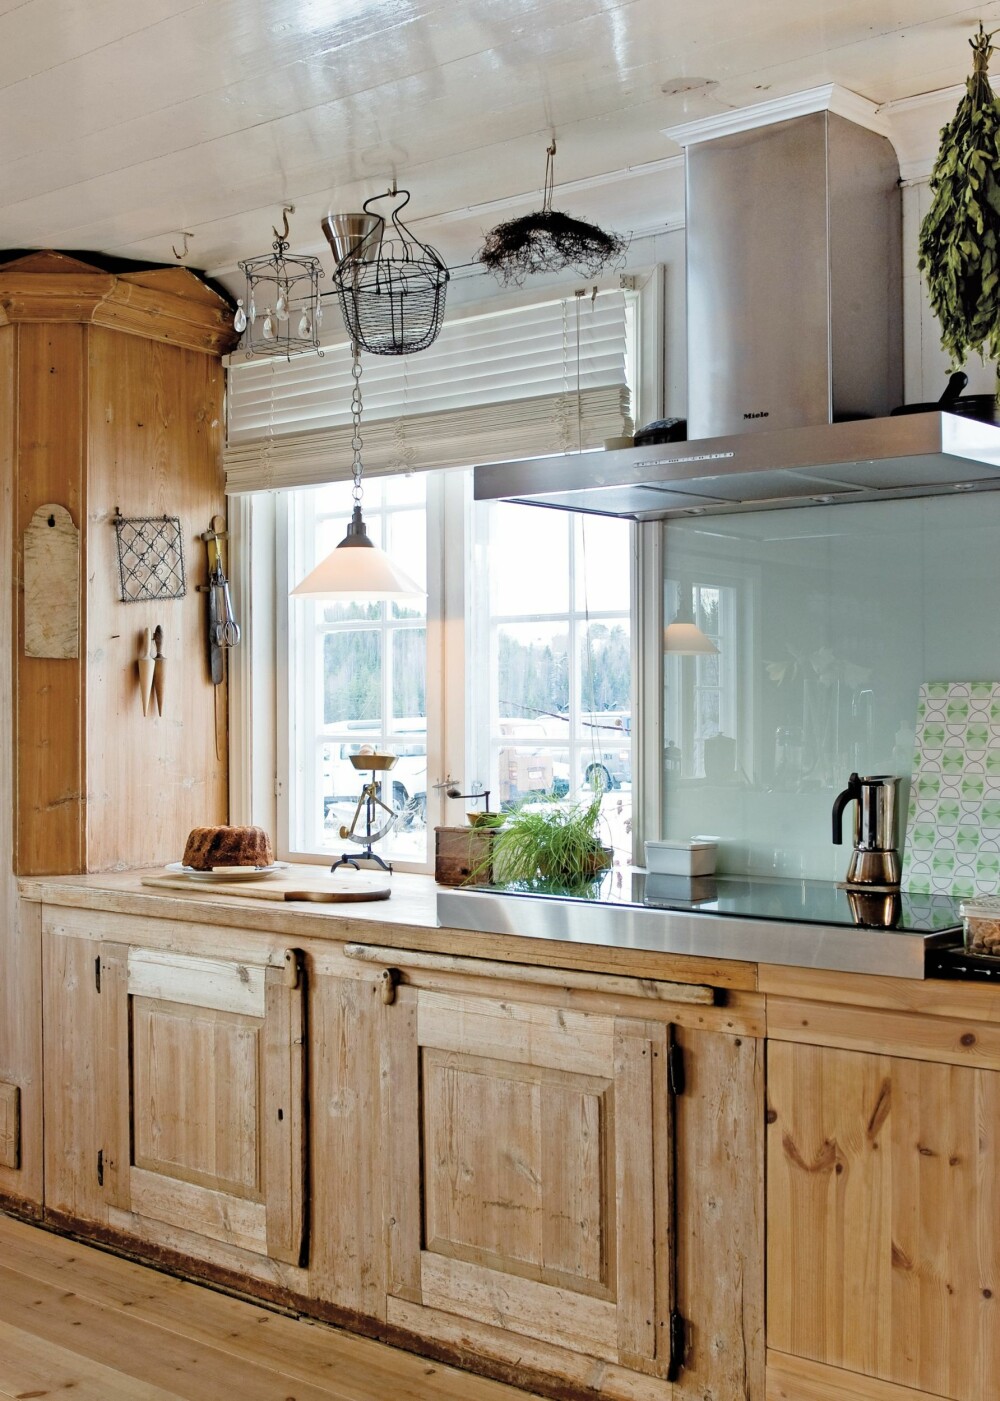 DETALJER: Magasinet Lev Landlig viser hvordan man kan inkorporere gamle detaljer i et funksjonelt hjem. Se hele kjøkkenet lengre ned.